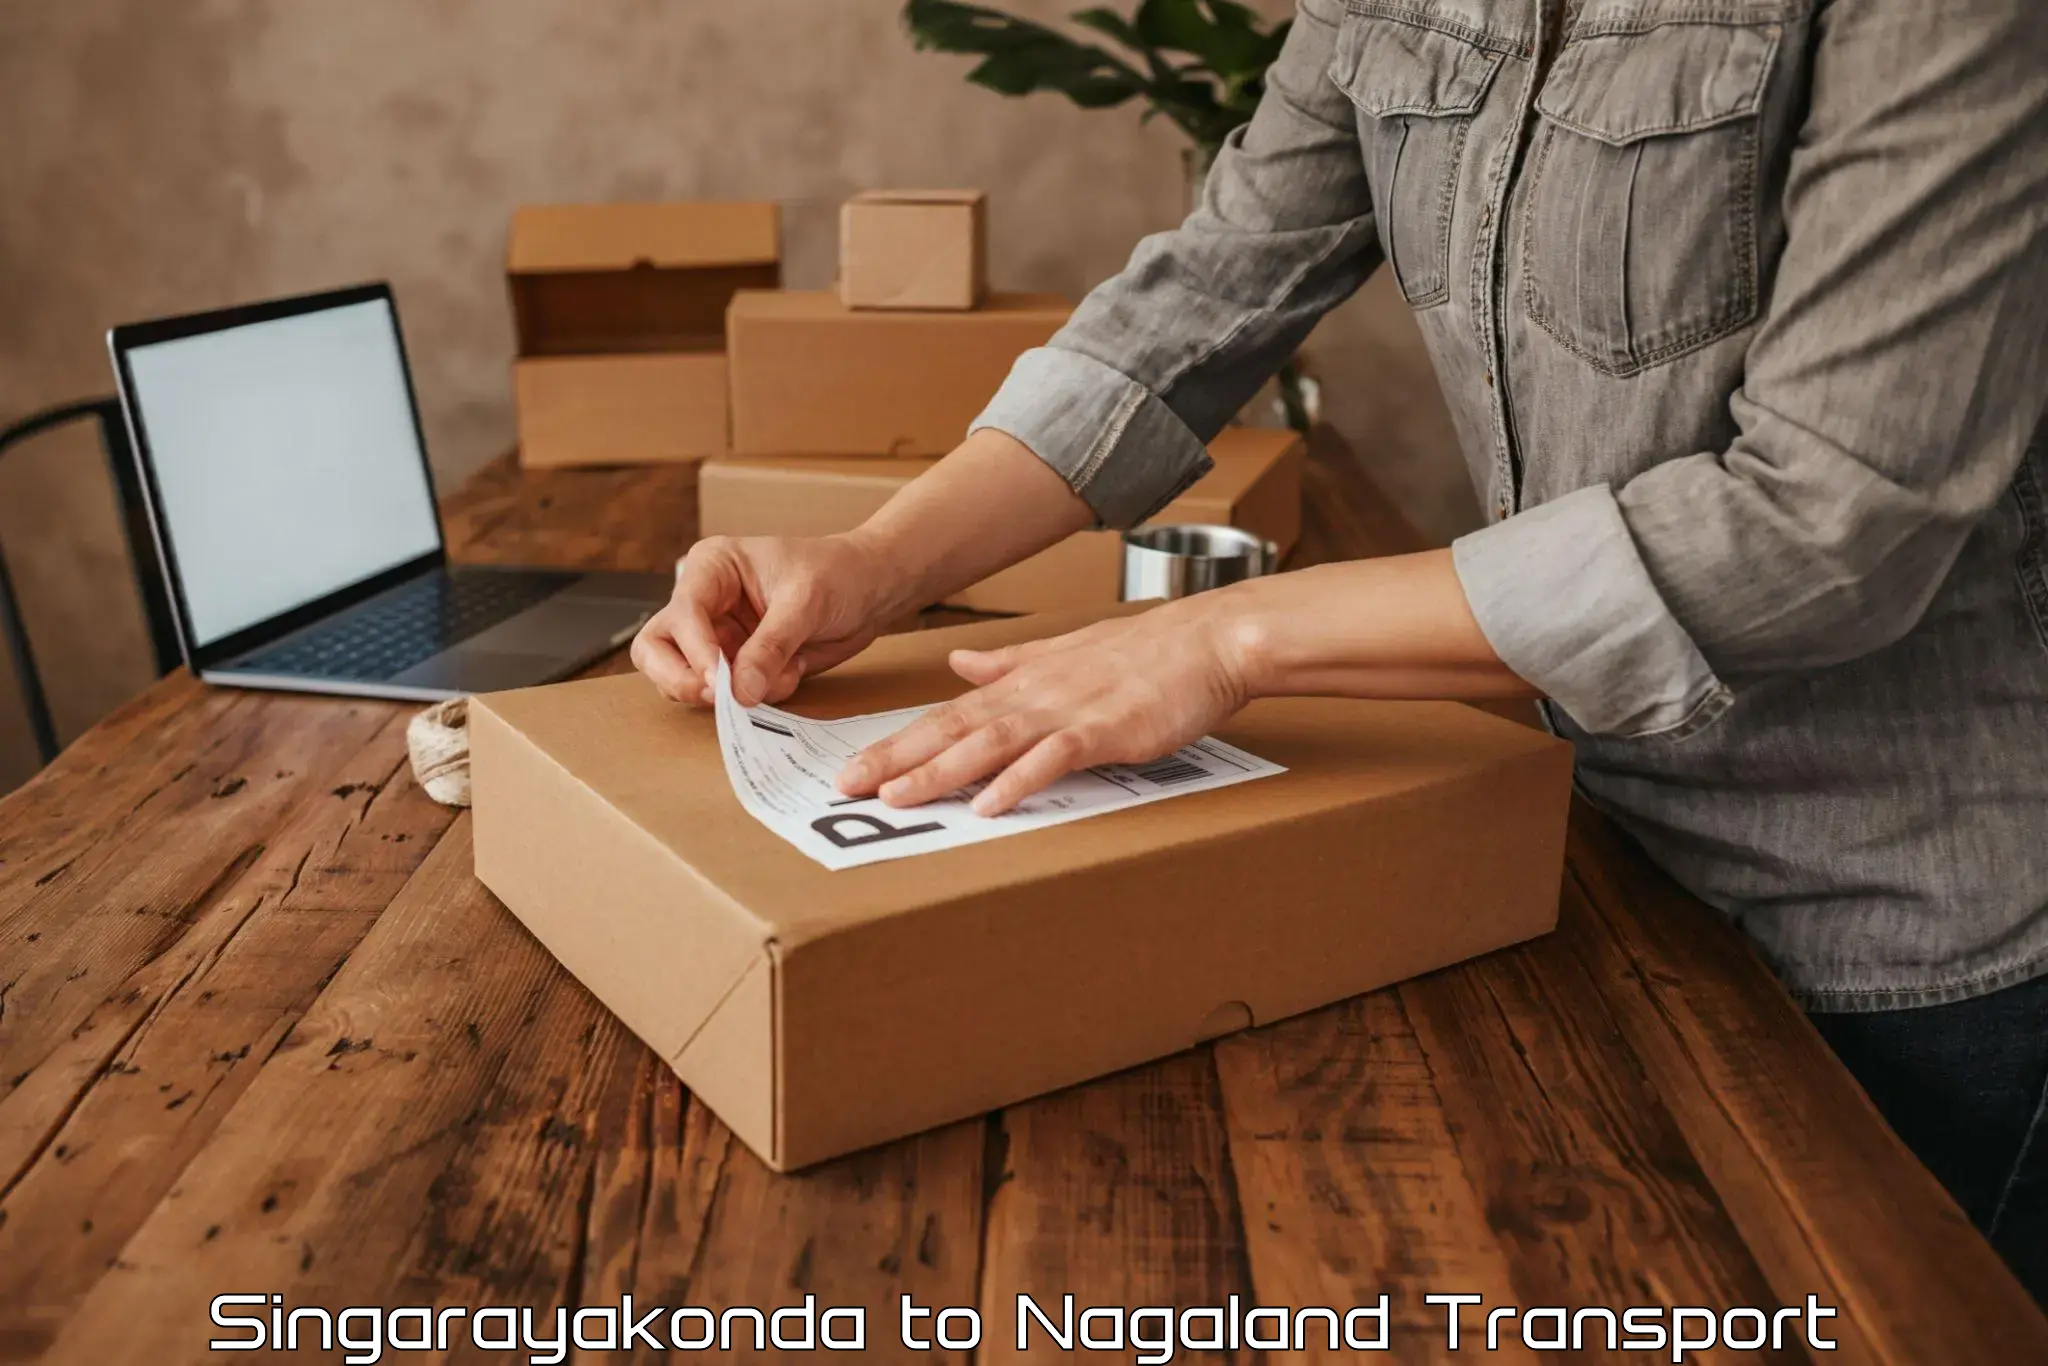 Daily transport service Singarayakonda to Nagaland